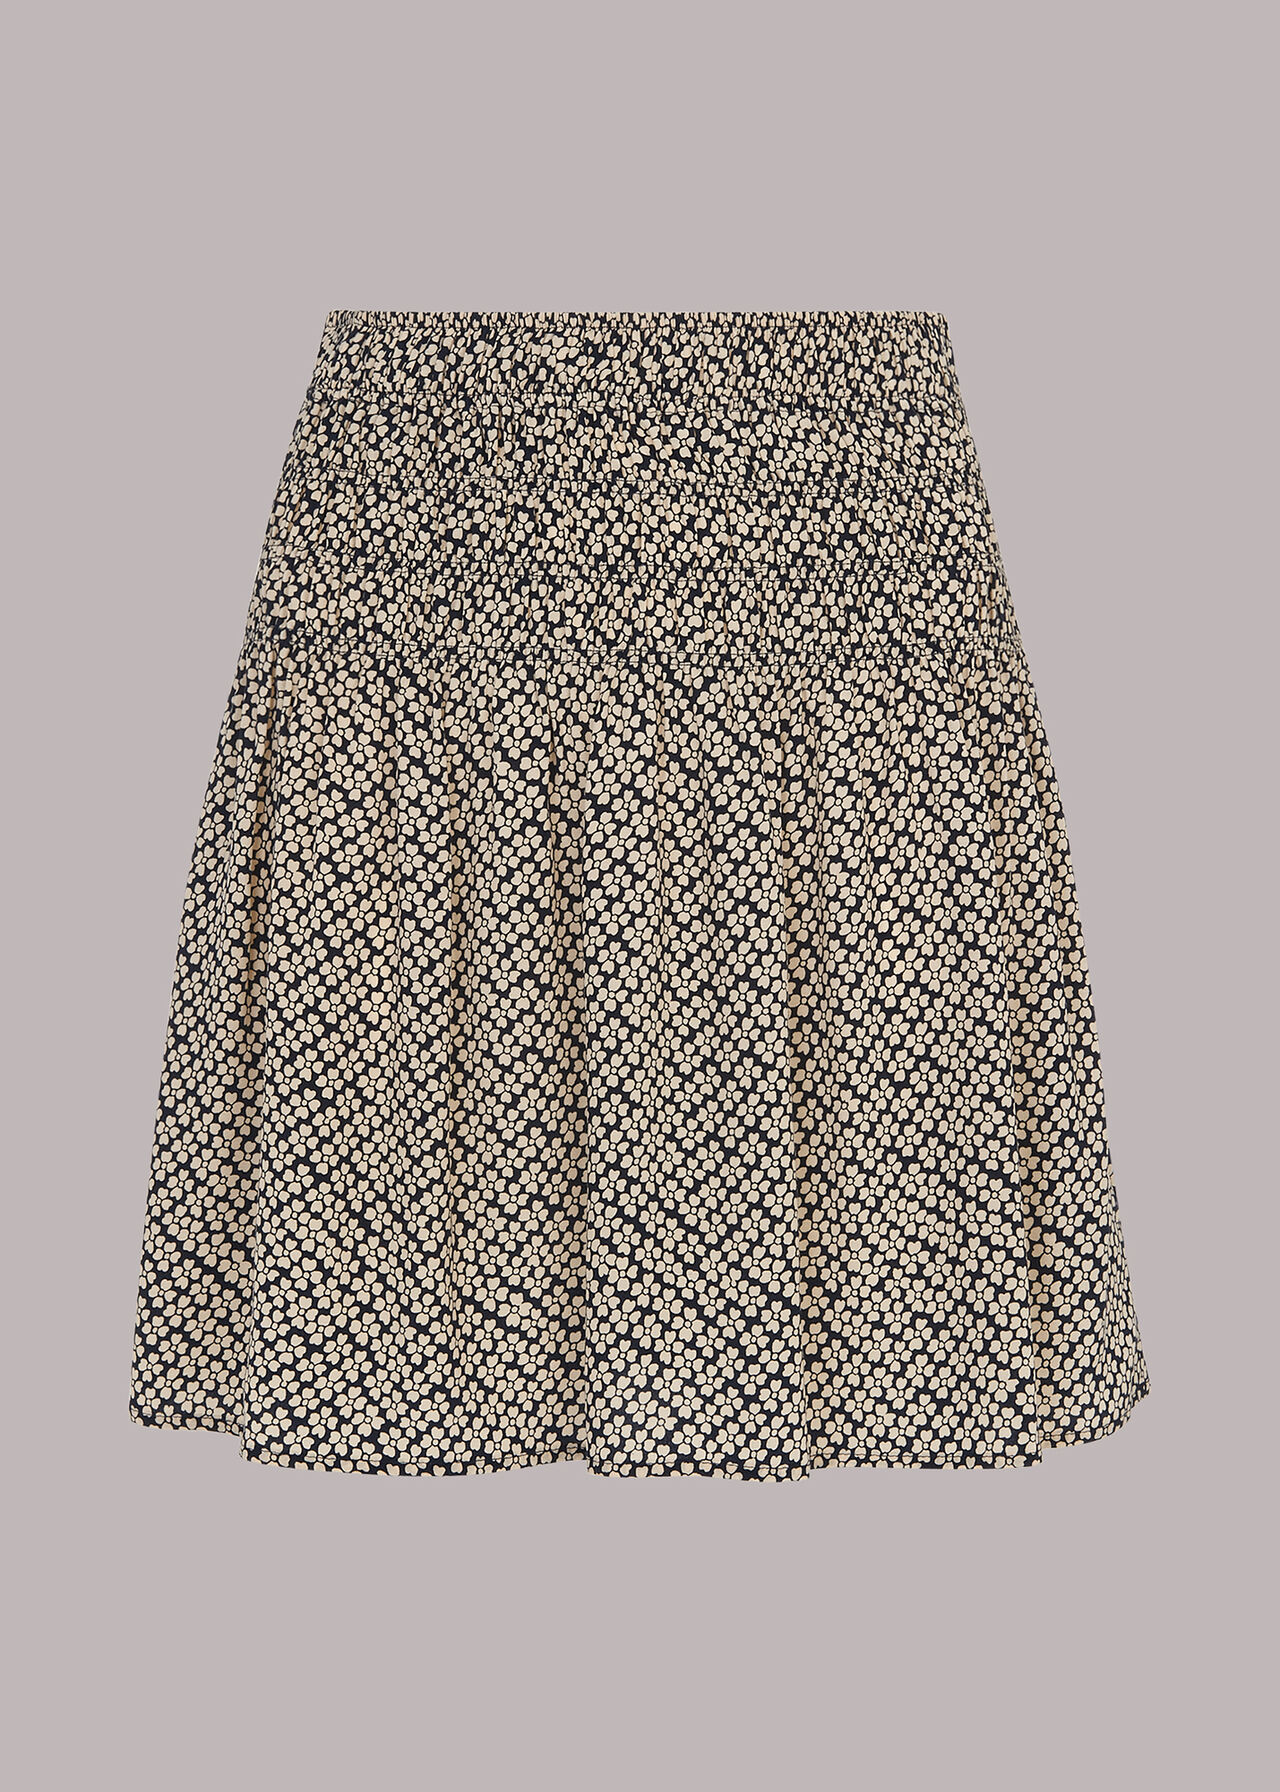 Clover Print Flippy Skirt